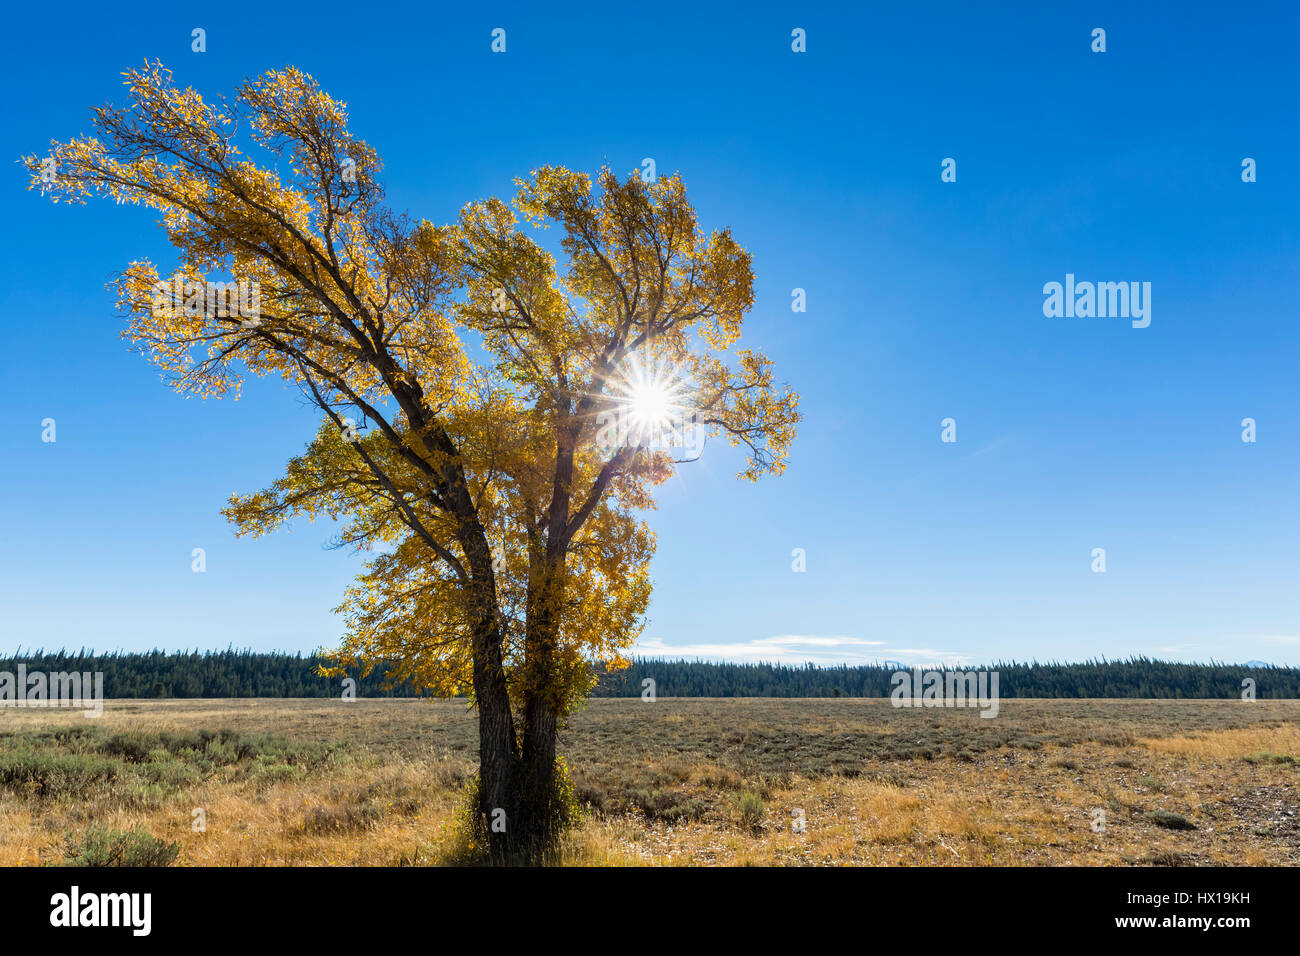 USA, Wyoming, Rocky Mountains, Grand Teton National Park, aspen in autumn Stock Photo